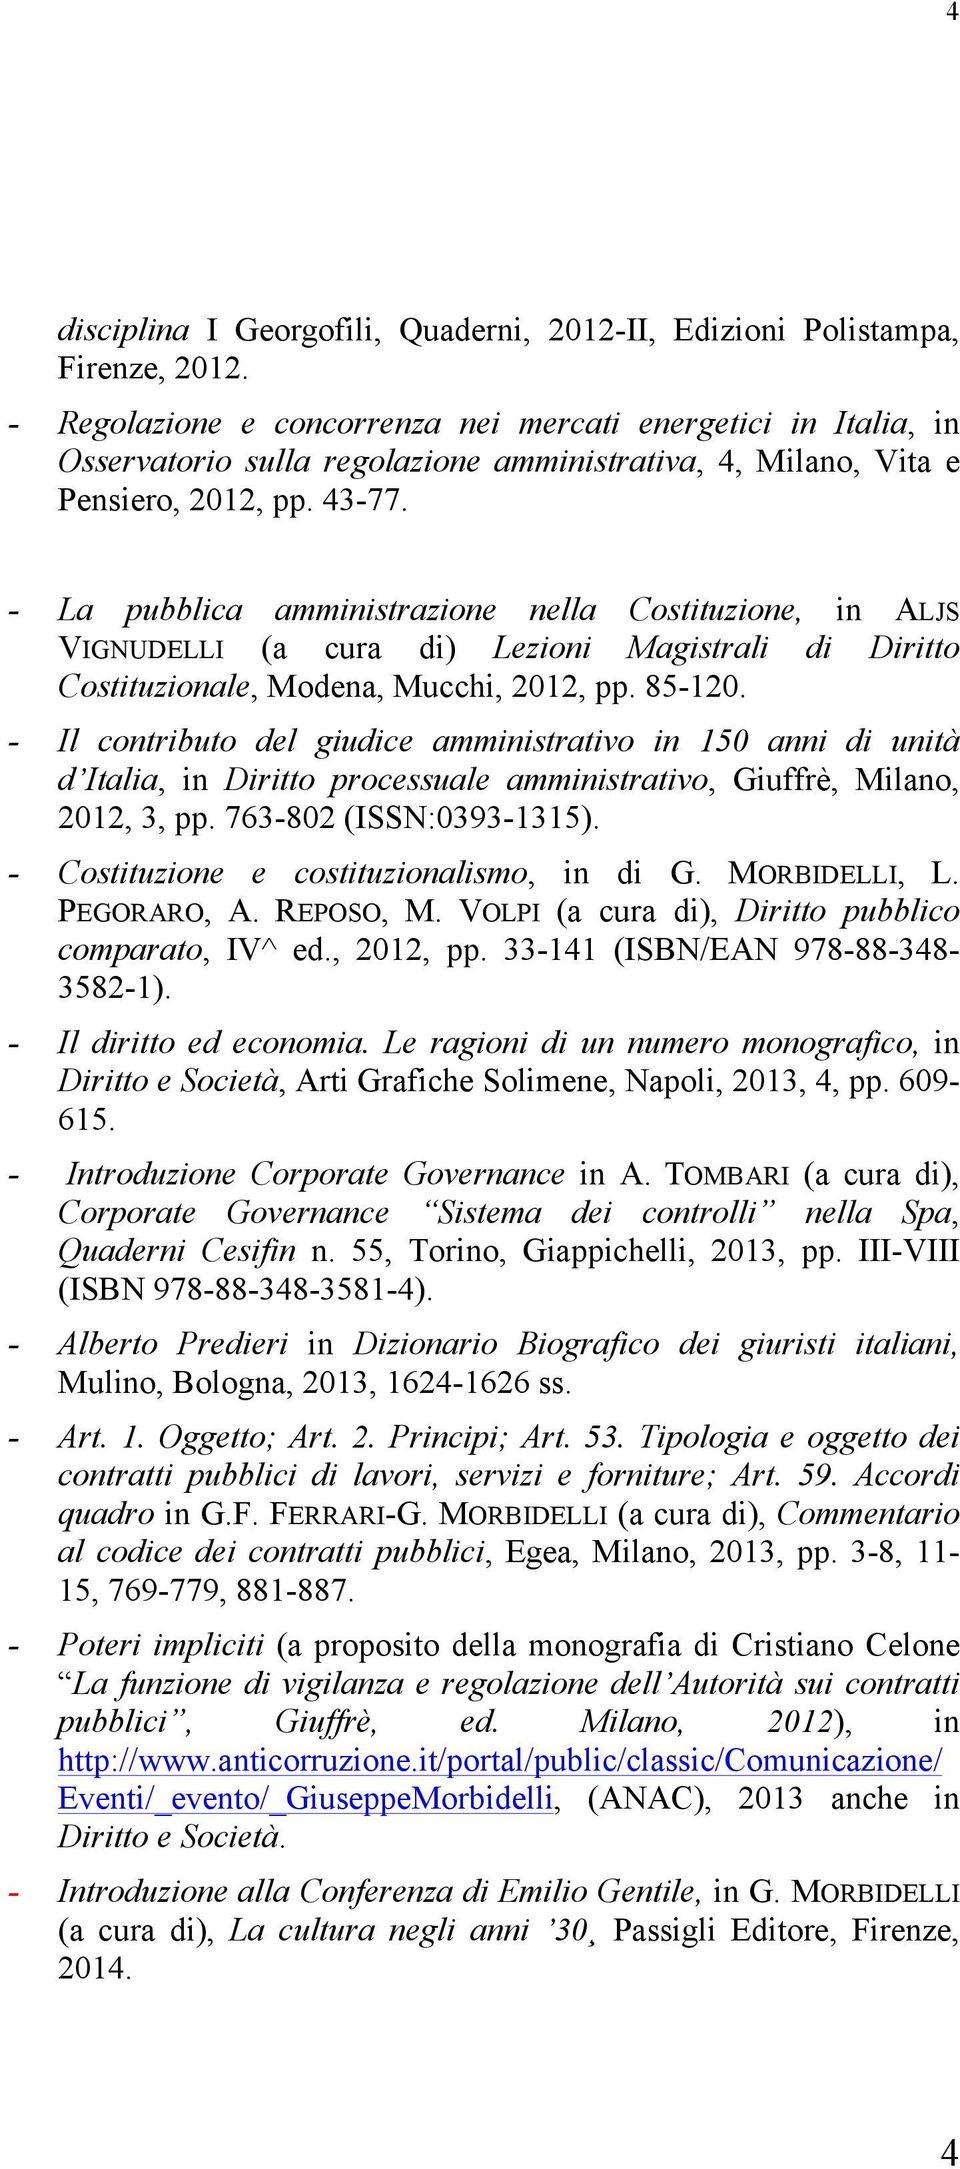 - La pubblica amministrazione nella Costituzione, in ALJS VIGNUDELLI (a cura di) Lezioni Magistrali di Diritto Costituzionale, Modena, Mucchi, 2012, pp. 85-120.